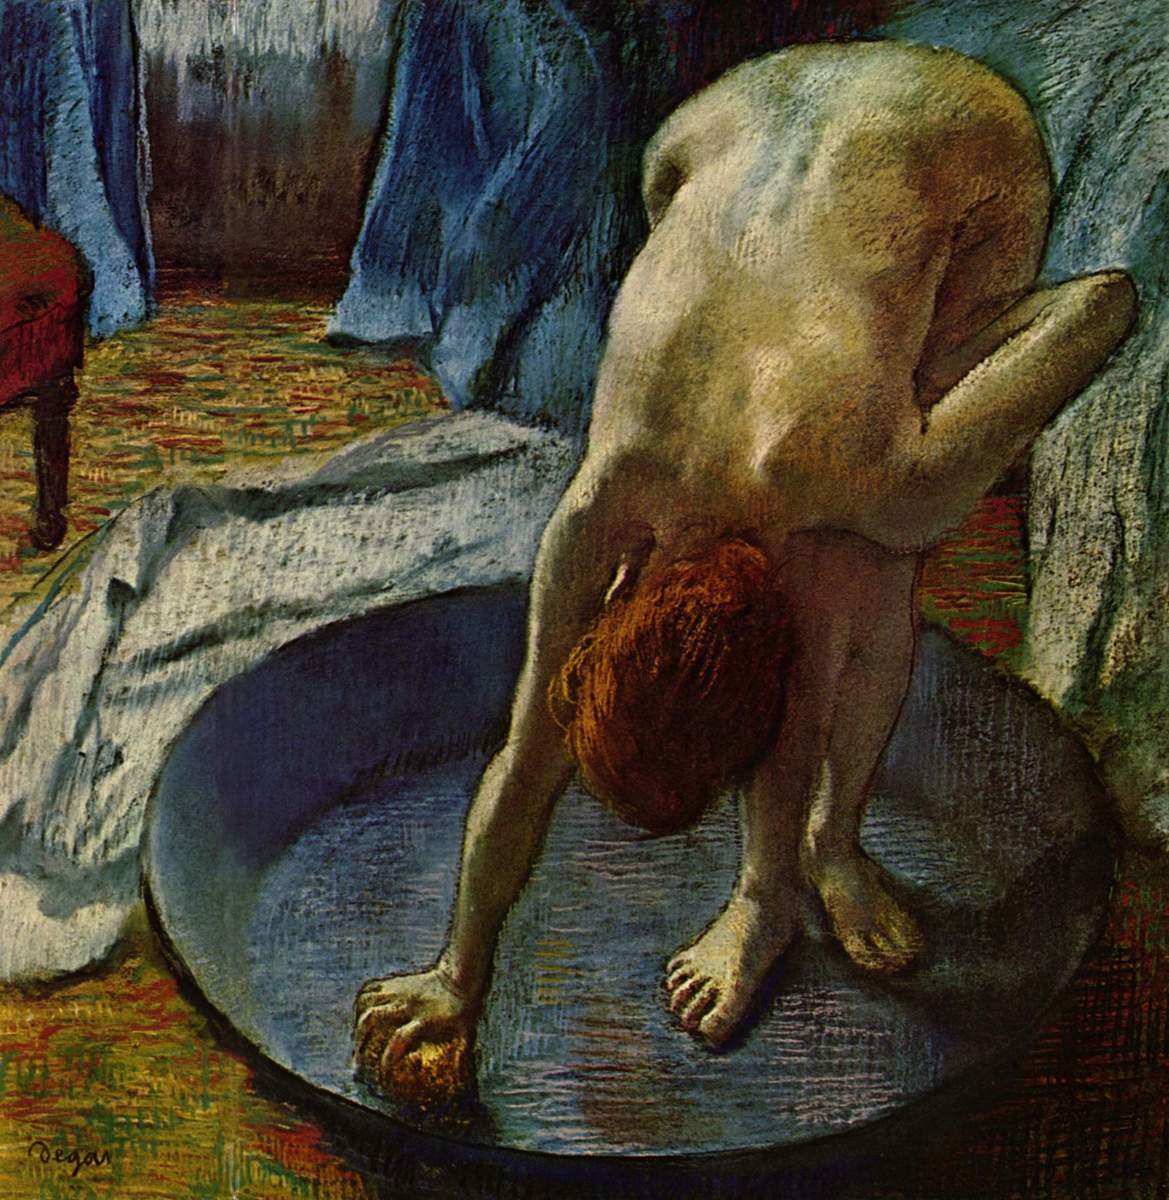 "WOMAN IN A BATH" BY EDGAR DEGAS IN 1886 (HILL-STEAD MUSEUM, FARMINGTON, CONNECTICUT) 